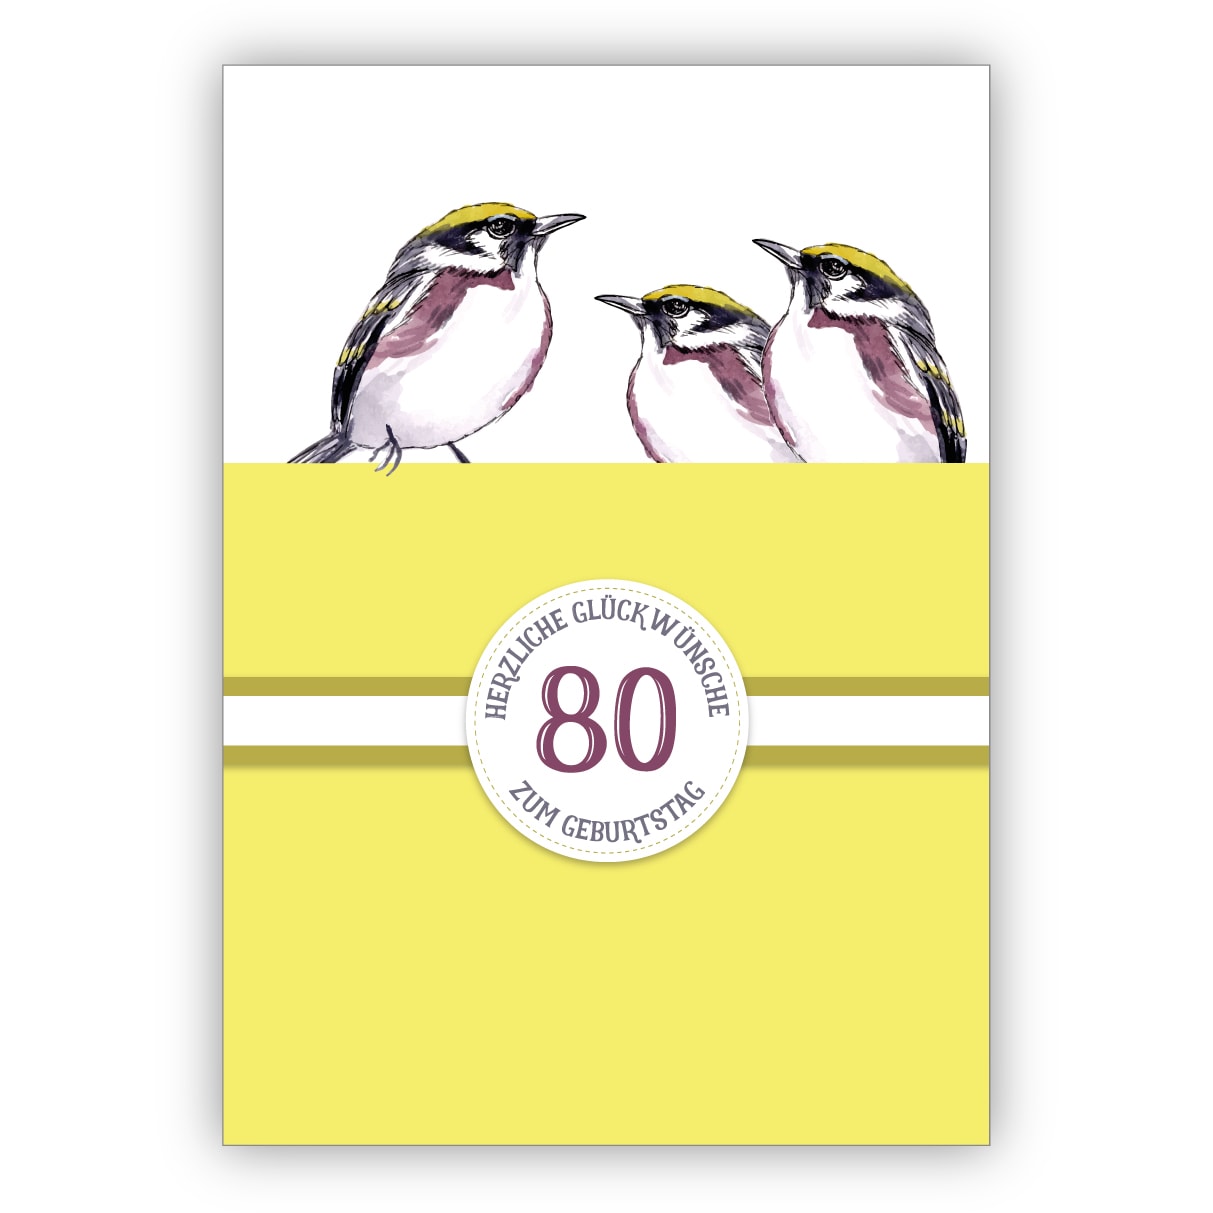 Sonnige Klassische Geburtstagskarte Zum 80 Geburtstag Mit Schonen Vogeln In Gelb 80 Herzliche Gluckwunsche Zum Geburtstag Kartenkaufrausch De